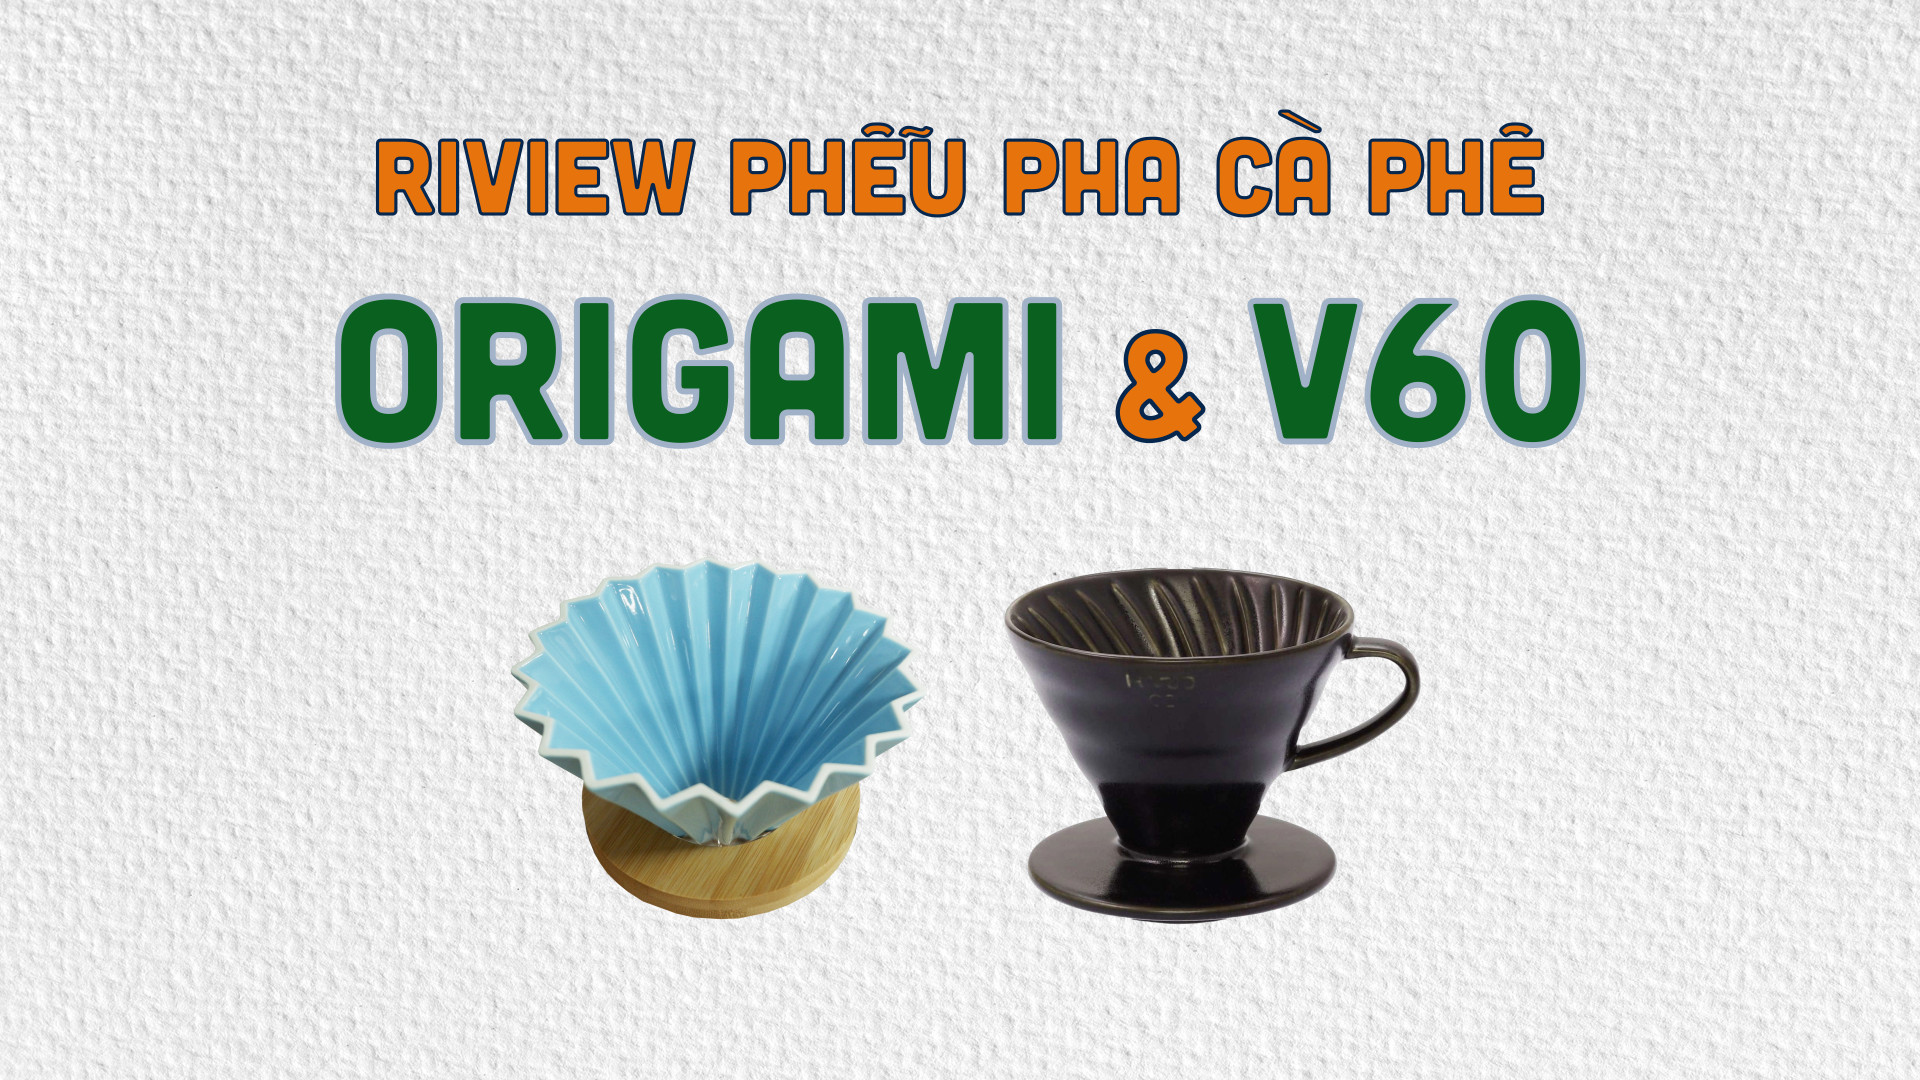 Phễu Pha Origami hay V60, bạn nên chọn loại nào?